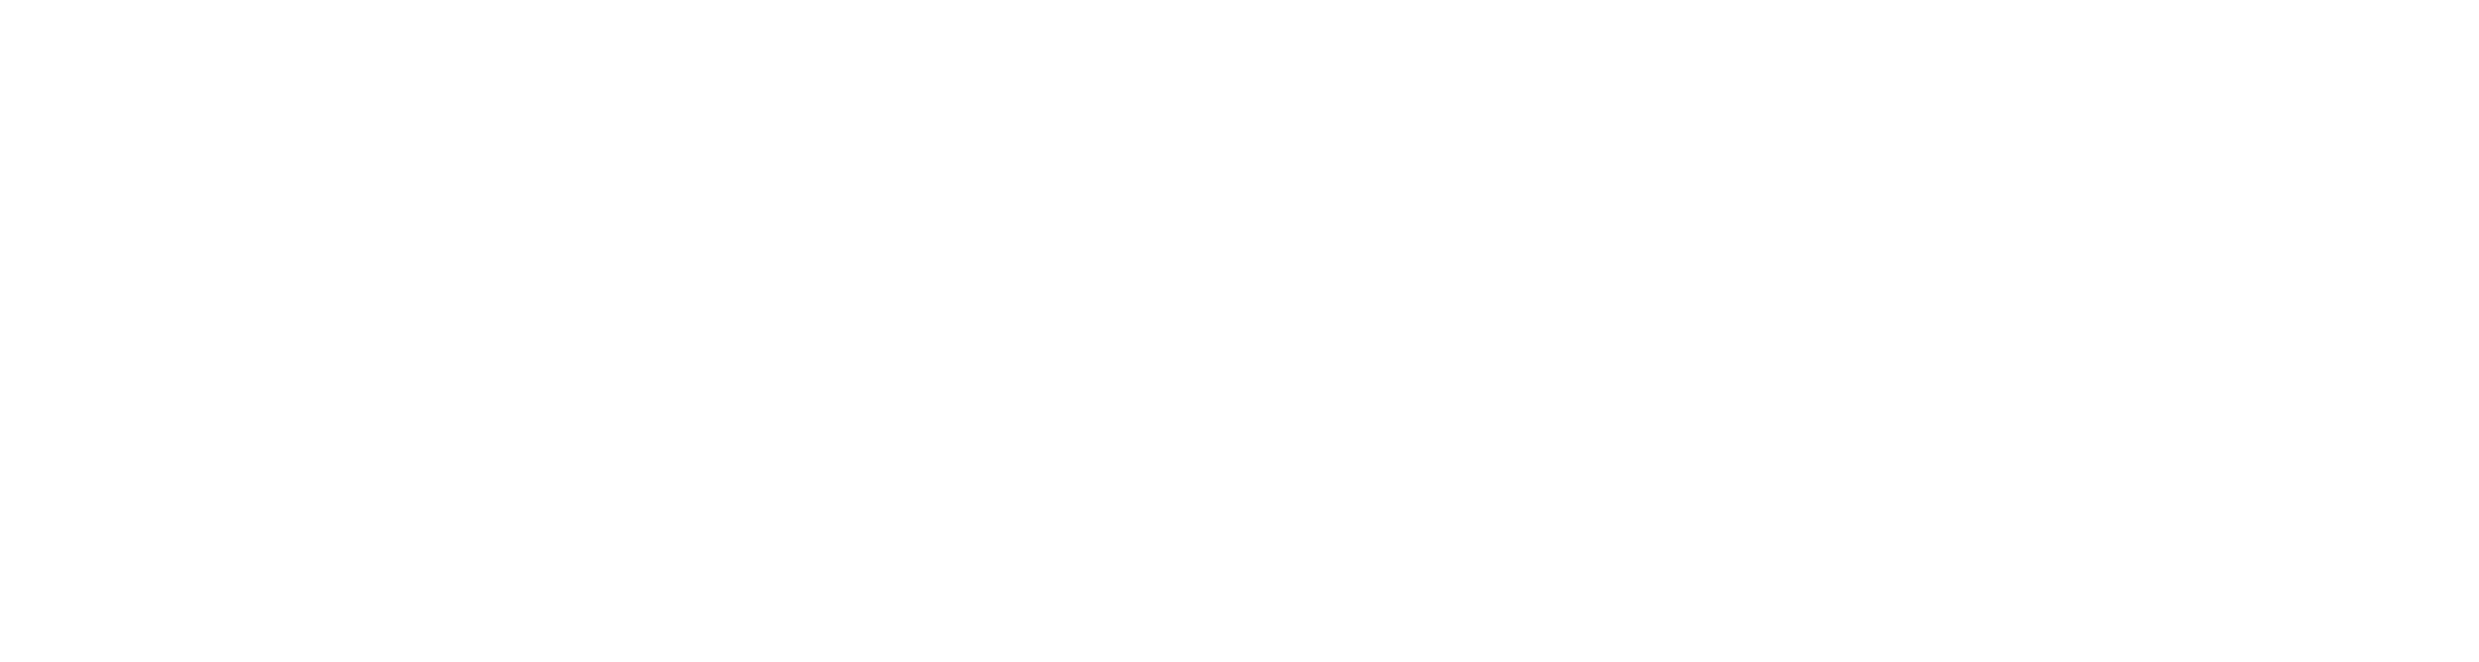 The Dodford Inn